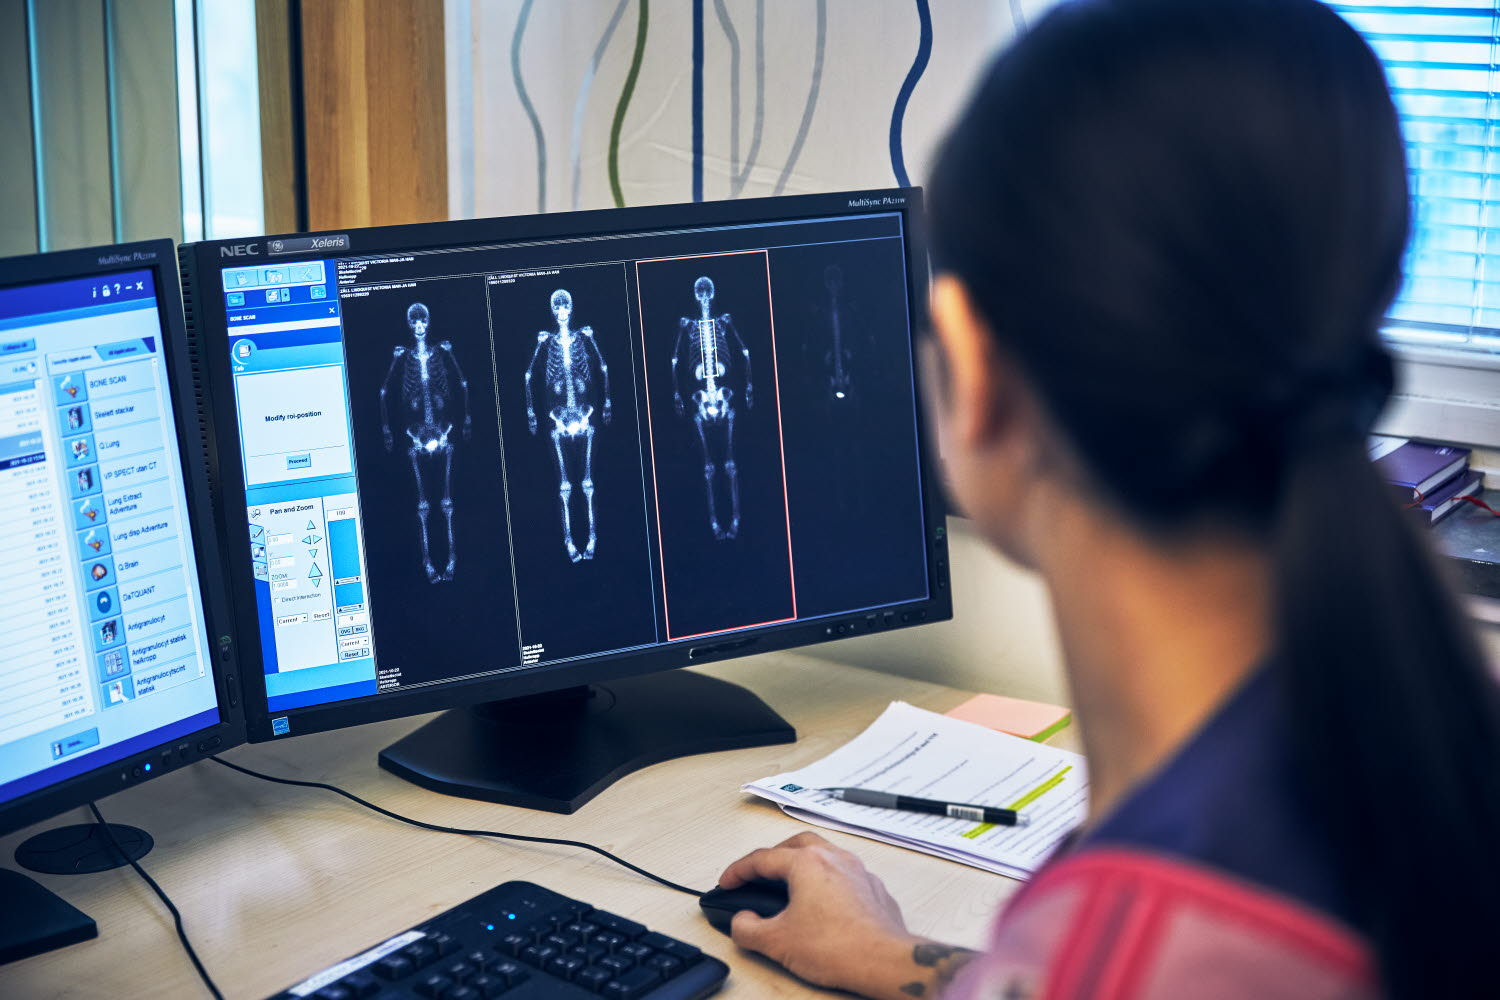 Röntgensjuksköterska framför bildskärmar med röntgenbild. Danderyds sjukhus, röntgen, nuklearmedicin. Oktober 2021.